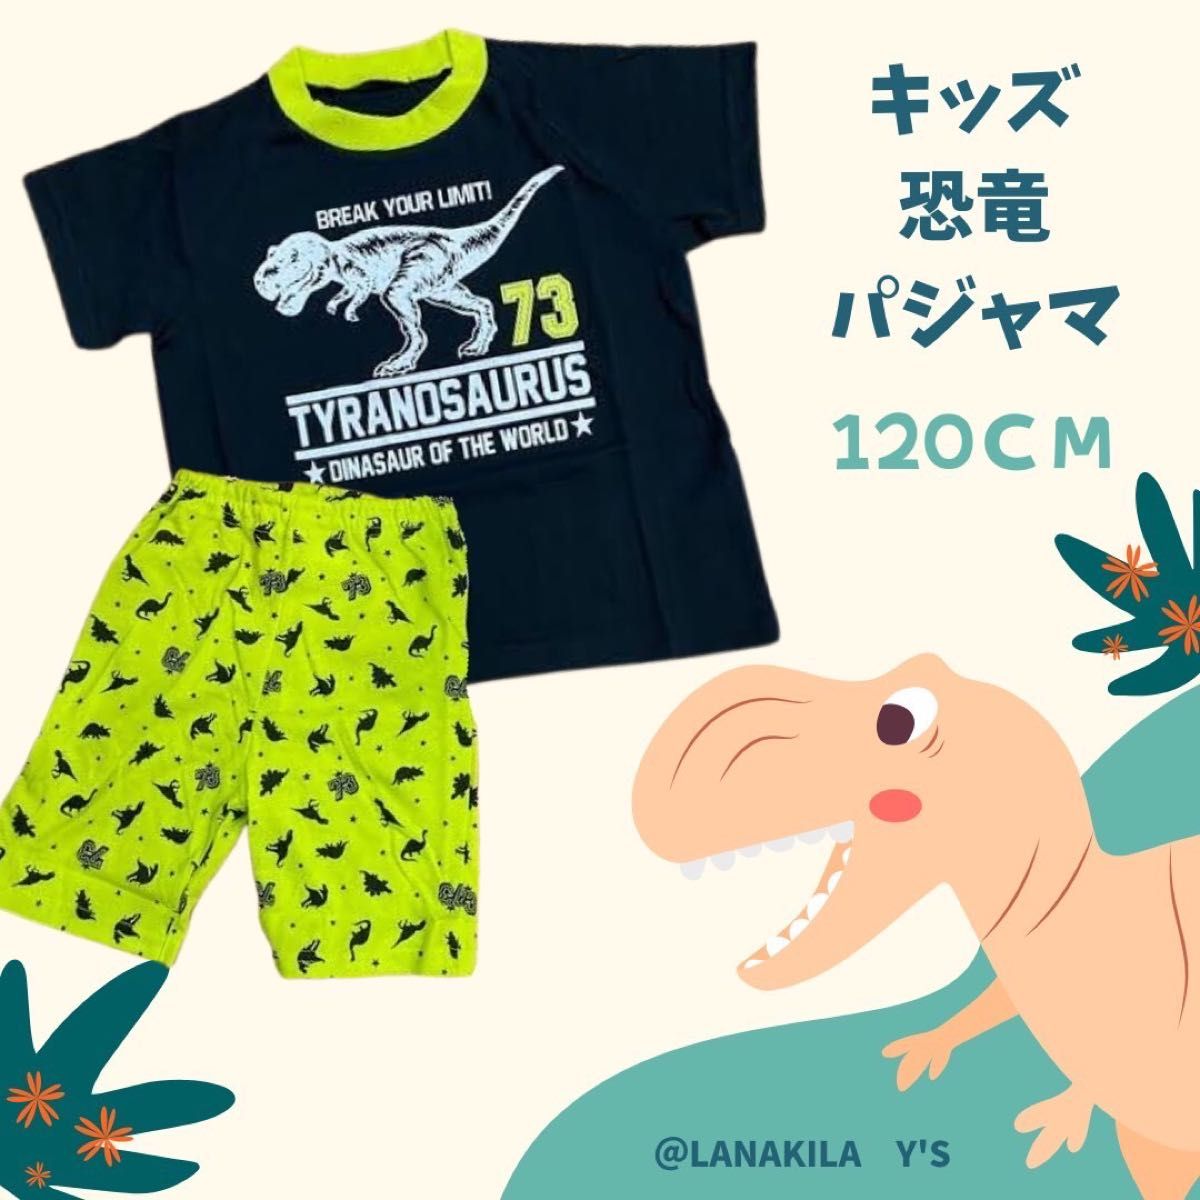 キッズ 恐竜 パジャマ 夏用 120cm 蛍光 イエロー 総柄 半袖パジャマ 上下セット キッズ 男の子 半ズボン